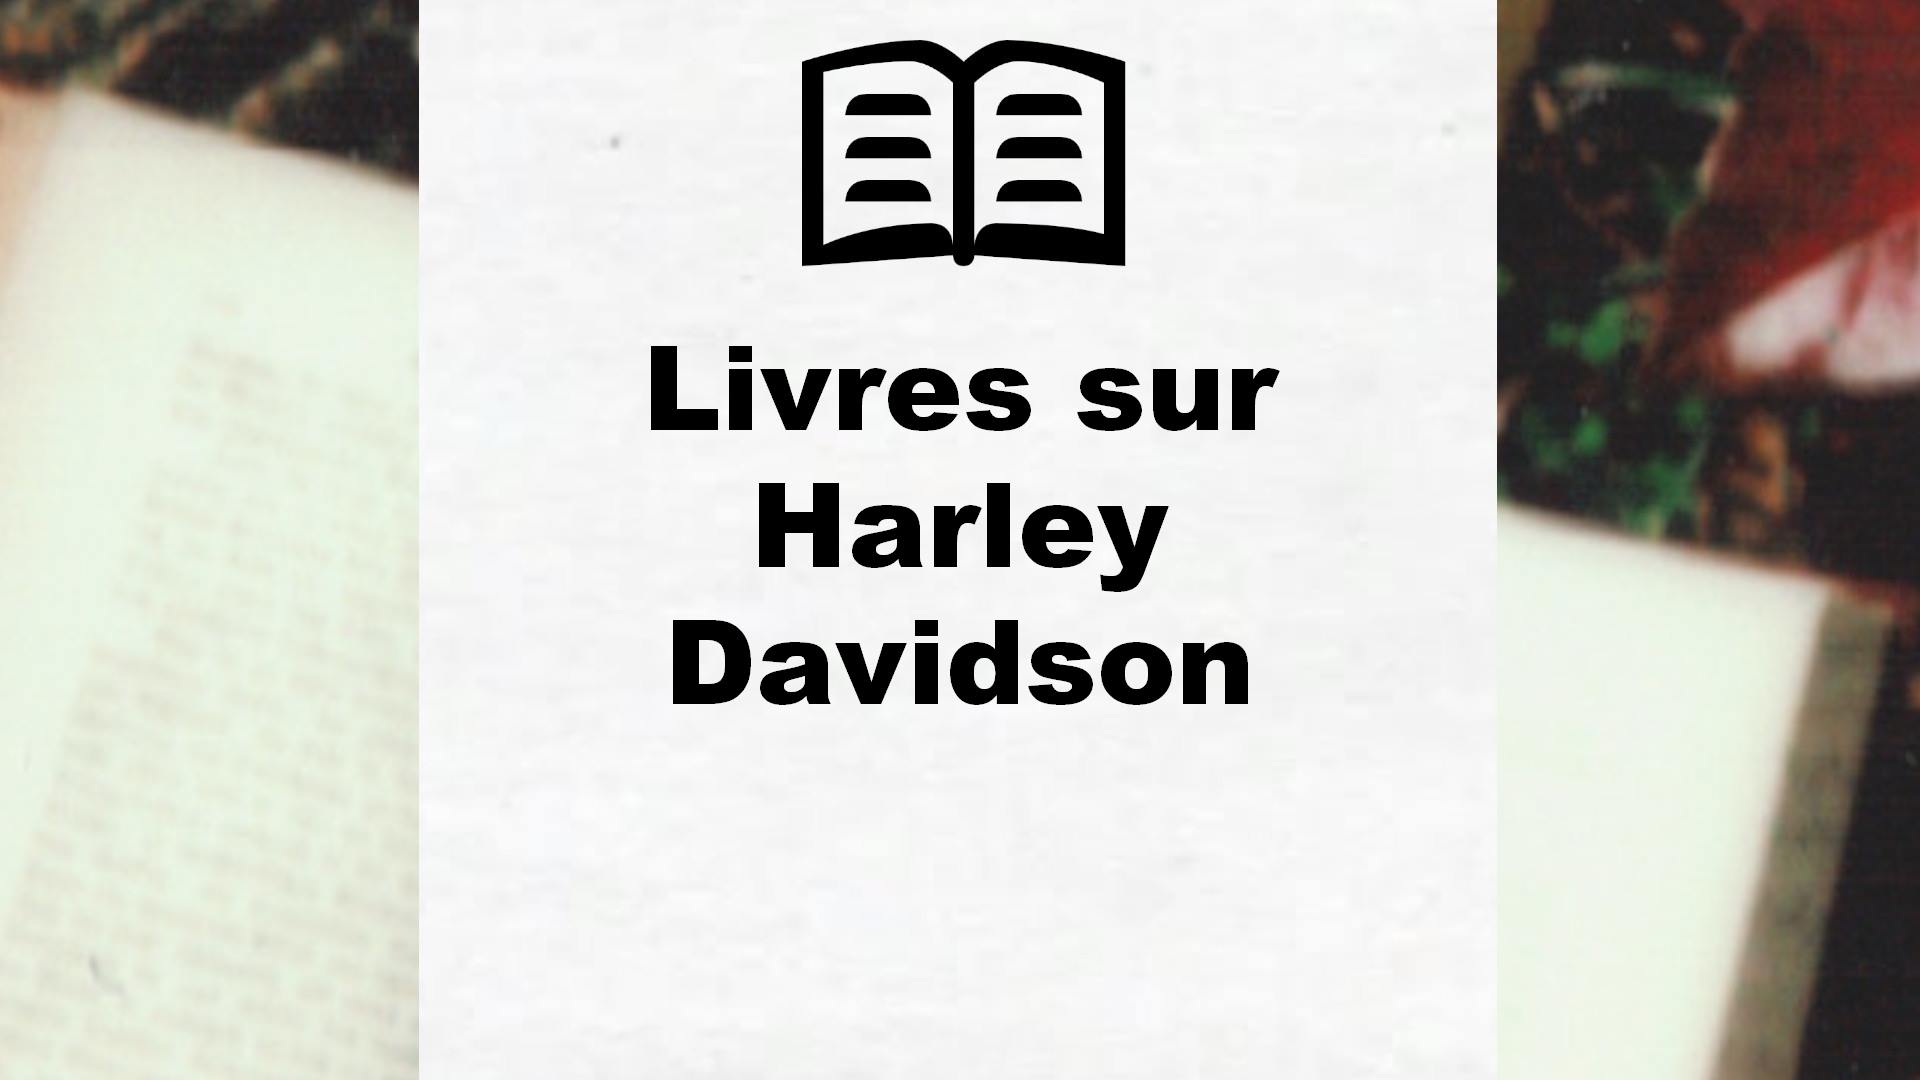 Livres sur Harley Davidson